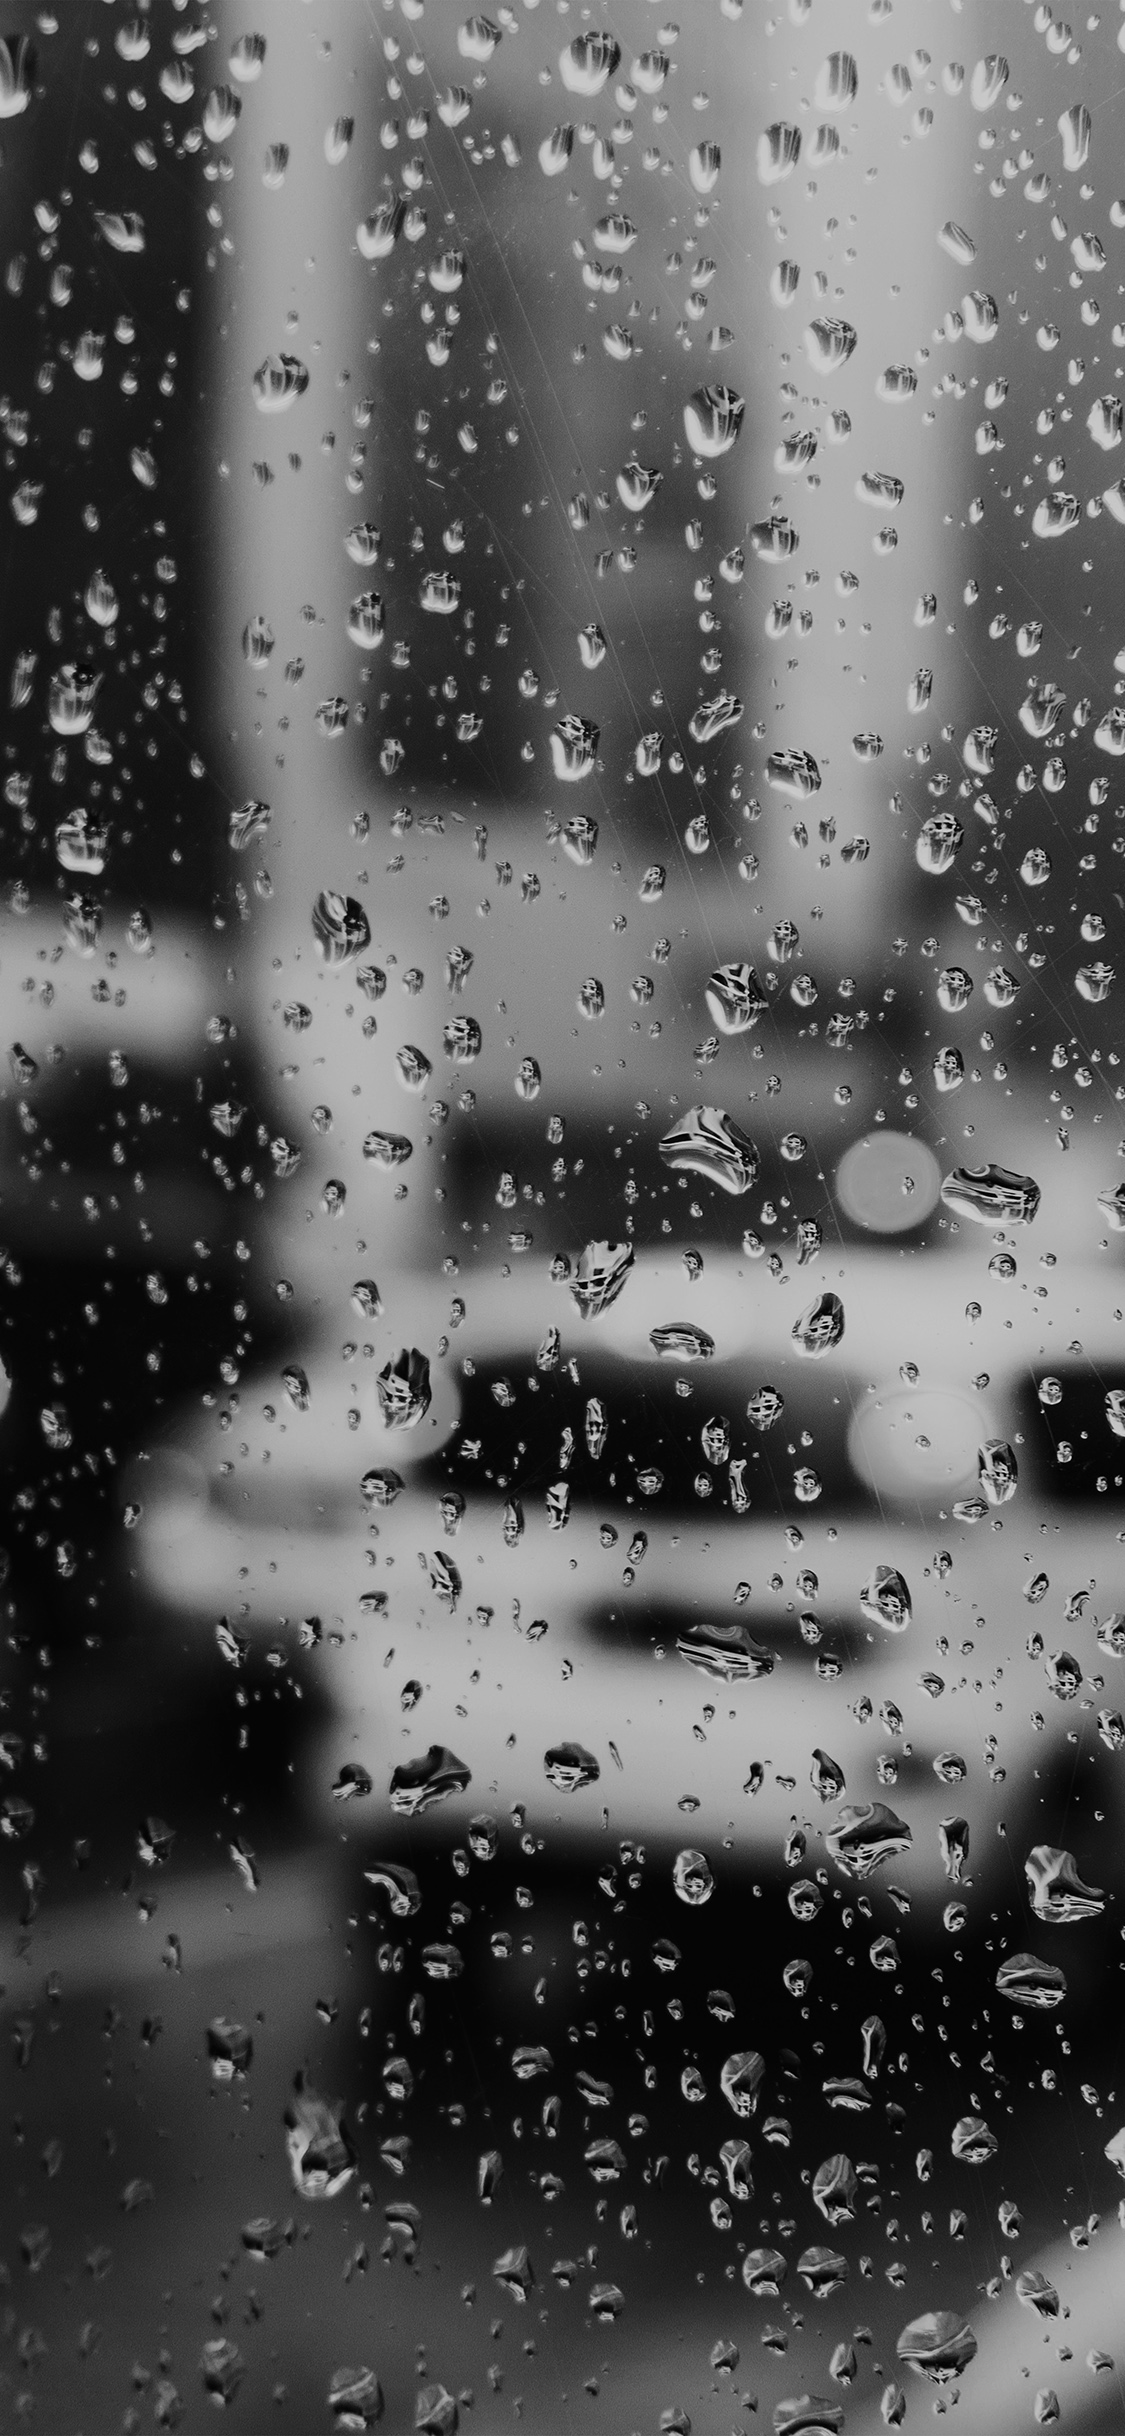 fond d'écran triste,l'eau,laissez tomber,noir,pluie,bruine